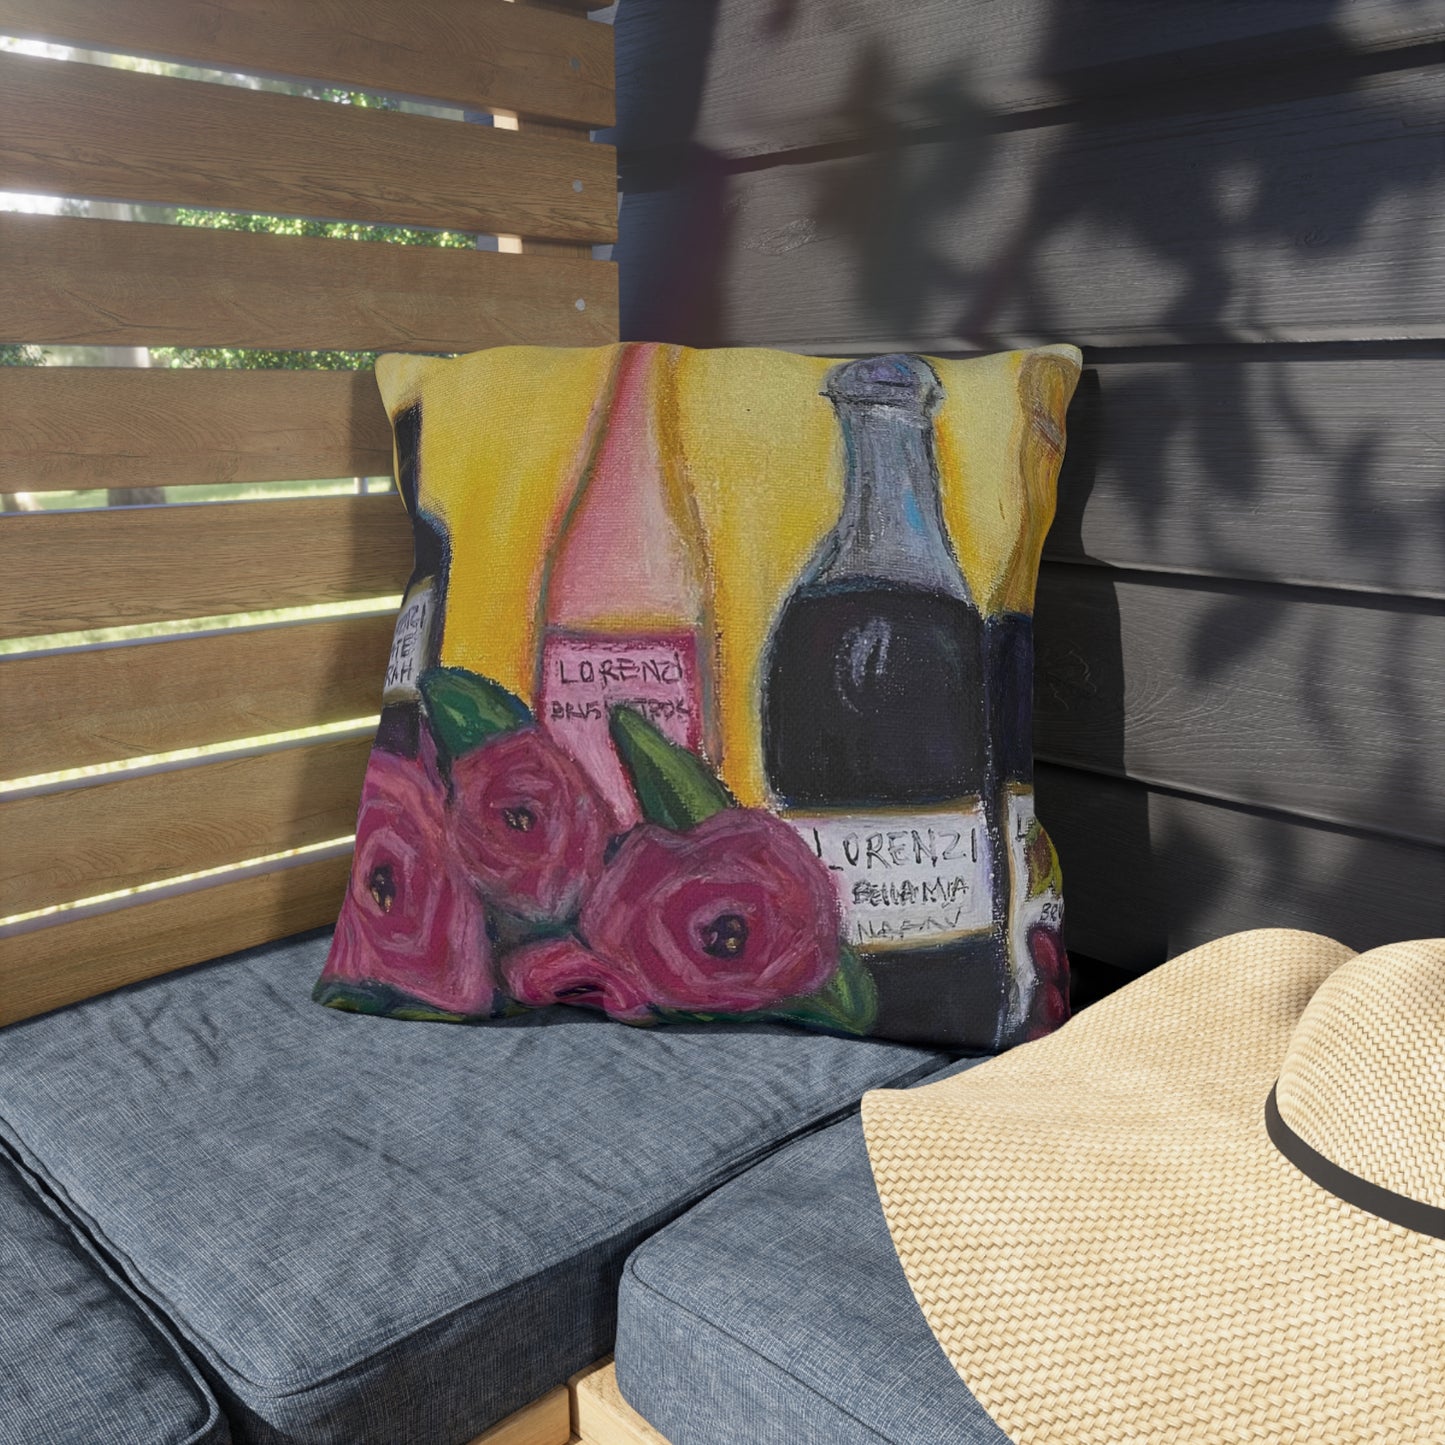 Lorenzi Estate Wine and Roses Almohadas para exteriores